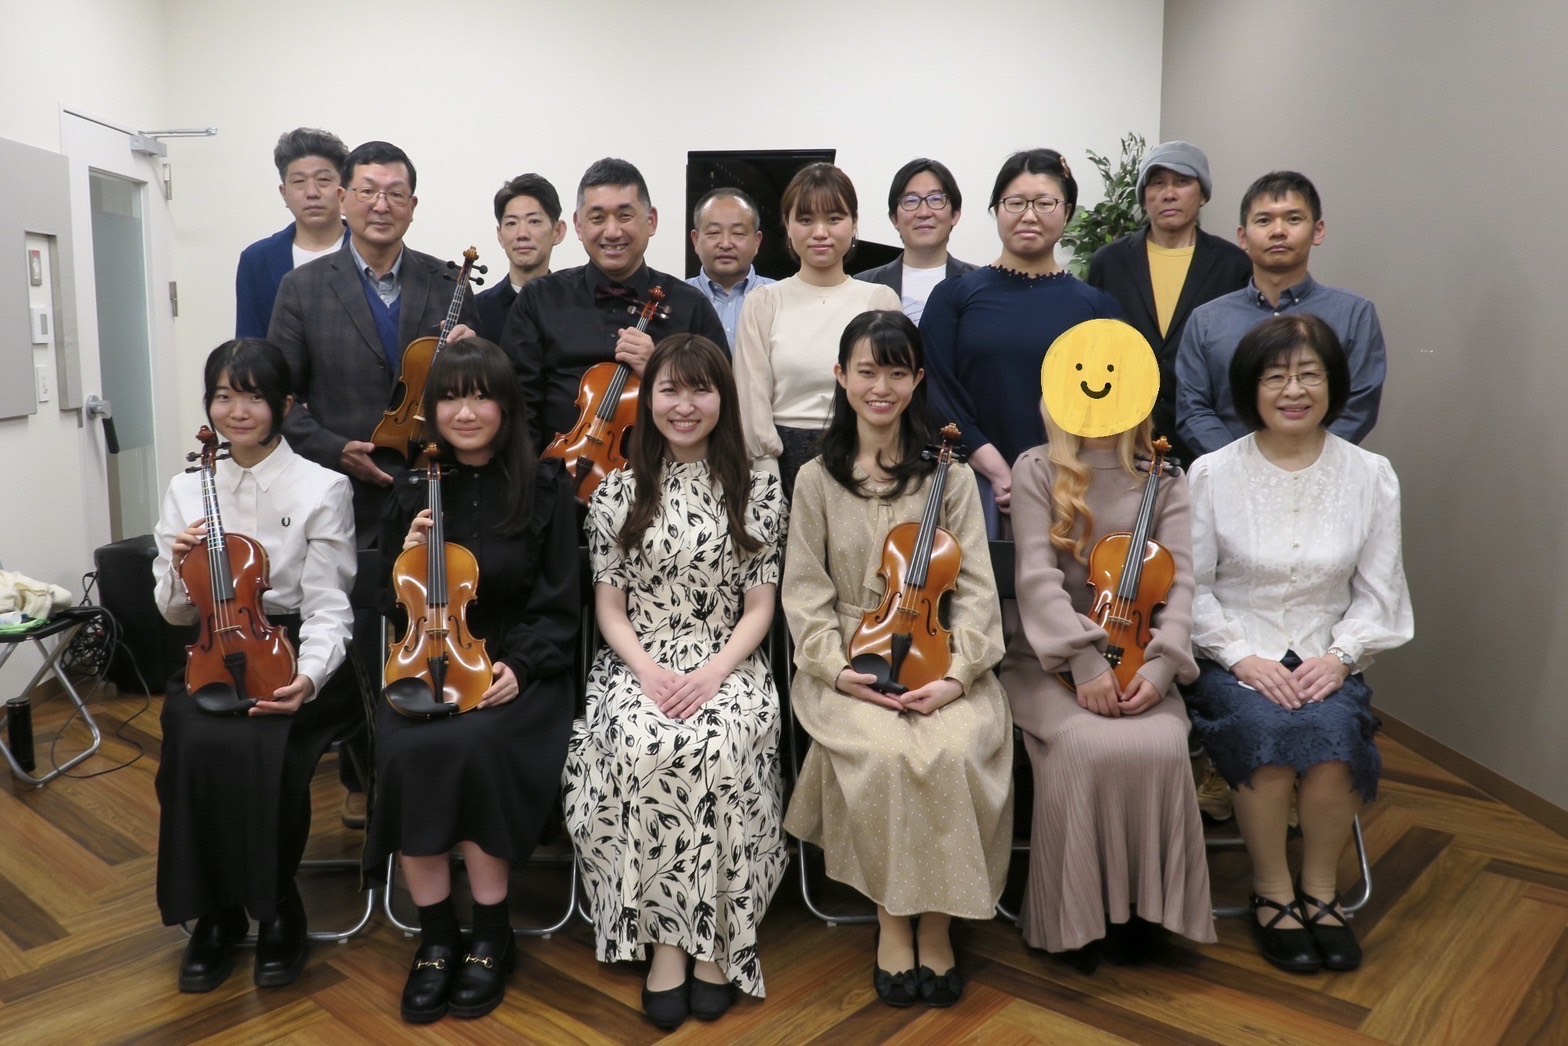 皆様、こんにちは！昨日、名古屋mozoオーパ店ピアノサロン会員様とヴァイオリンサロン会員様限定のサロン発表会を開催いたしました！ ピアノサロン会員様9名、ヴァイオリンサロン会員様5名の皆様にご出演いただきました。ご出演者の皆様、素敵な演奏をありがとうございました！ 発表会の様子をお届けいたします♪  […]